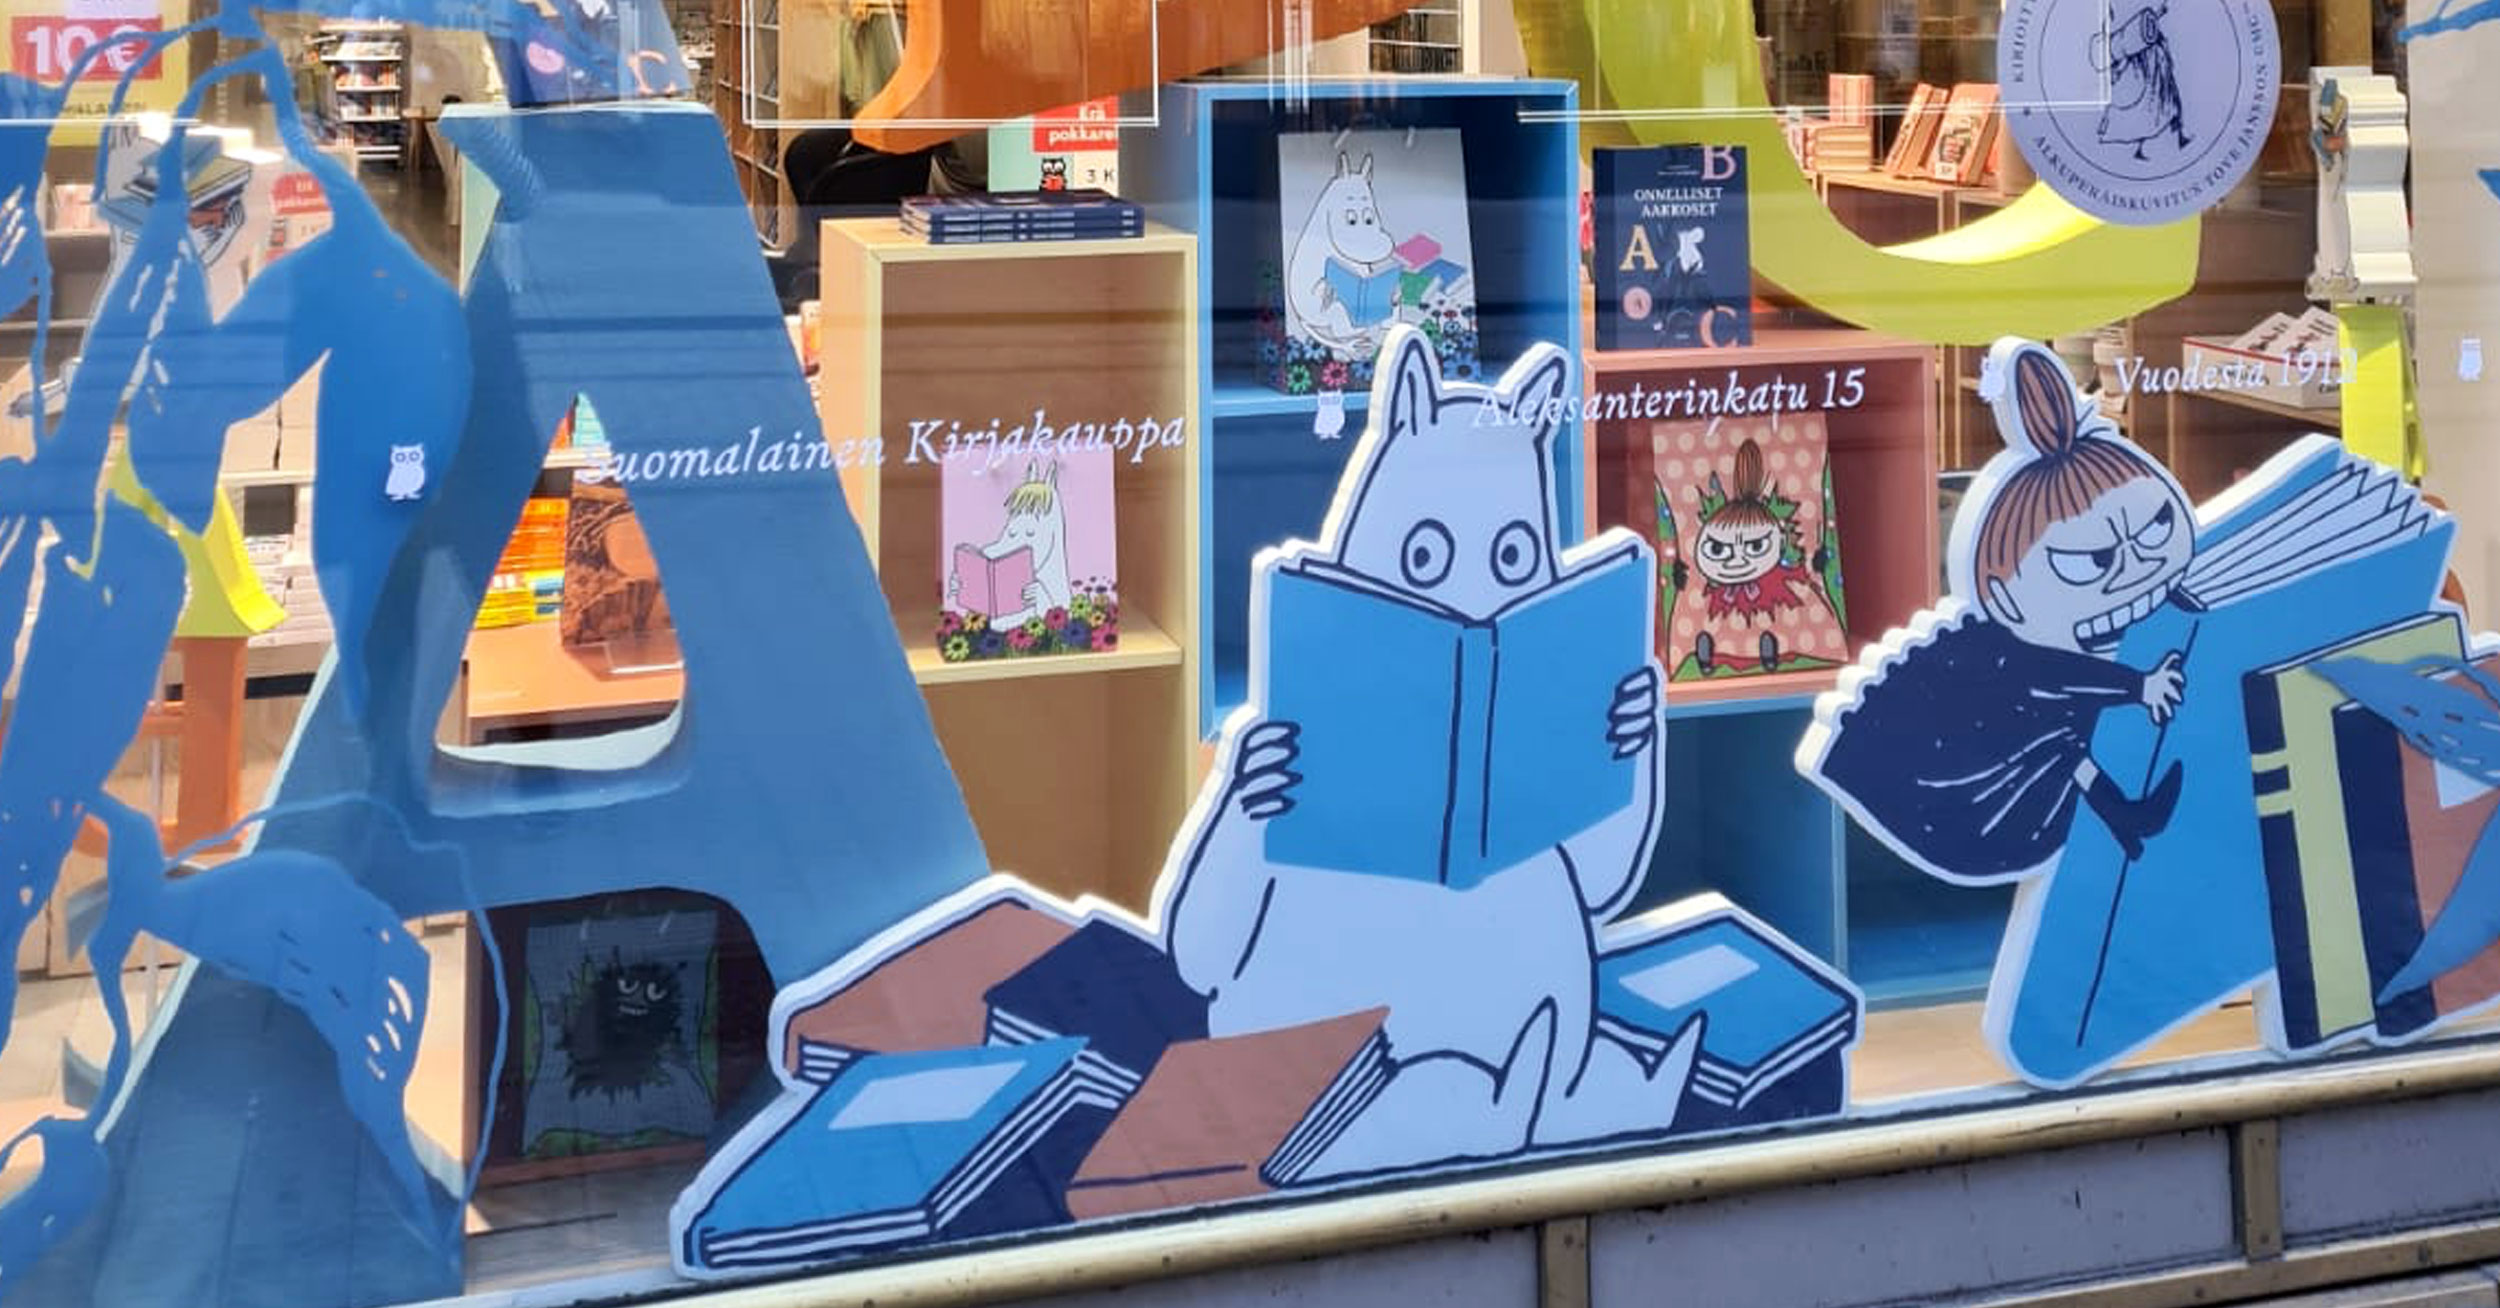 New, delightful Moomin shop-in-shops in Suomalainen Kirjakauppa!